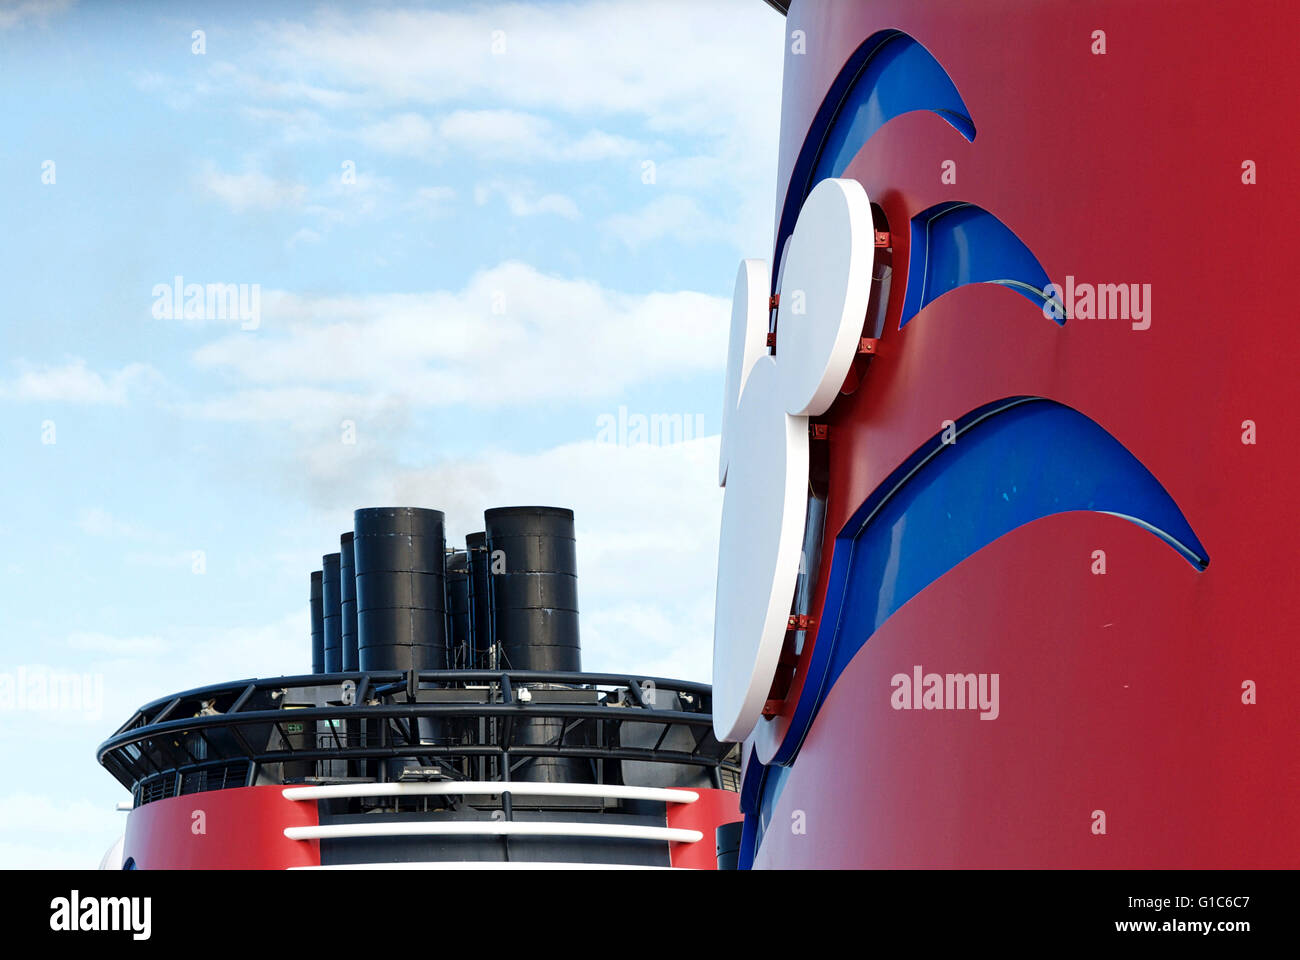 Nahaufnahme Bild der Schornstein von der Disney Dream cruise Schiff und Logo während einer Kreuzfahrt zwischen den USA und den Bahamas. Stockfoto